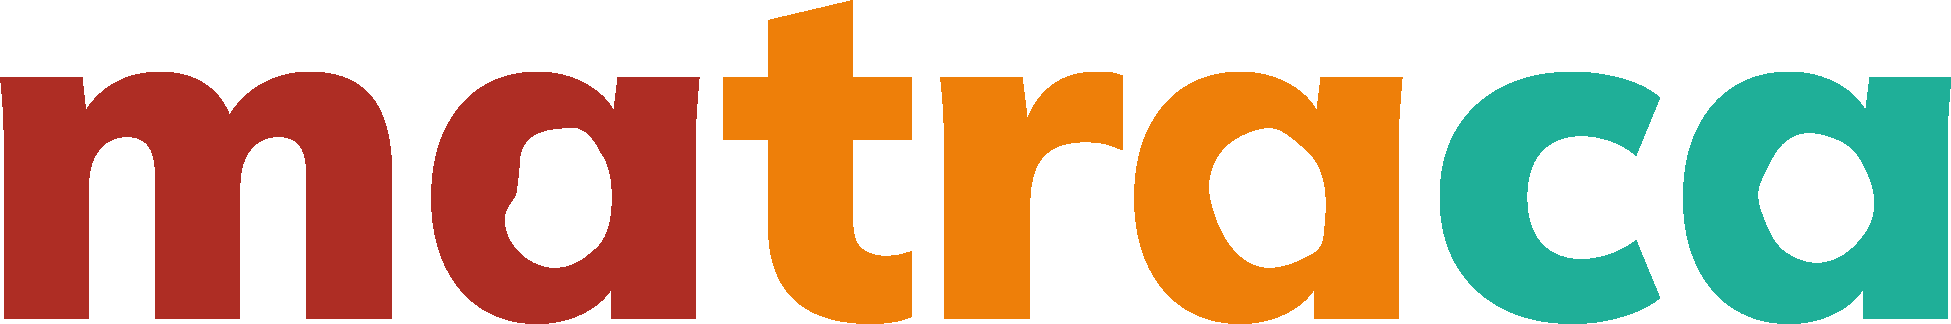 Logotipo de marca artística